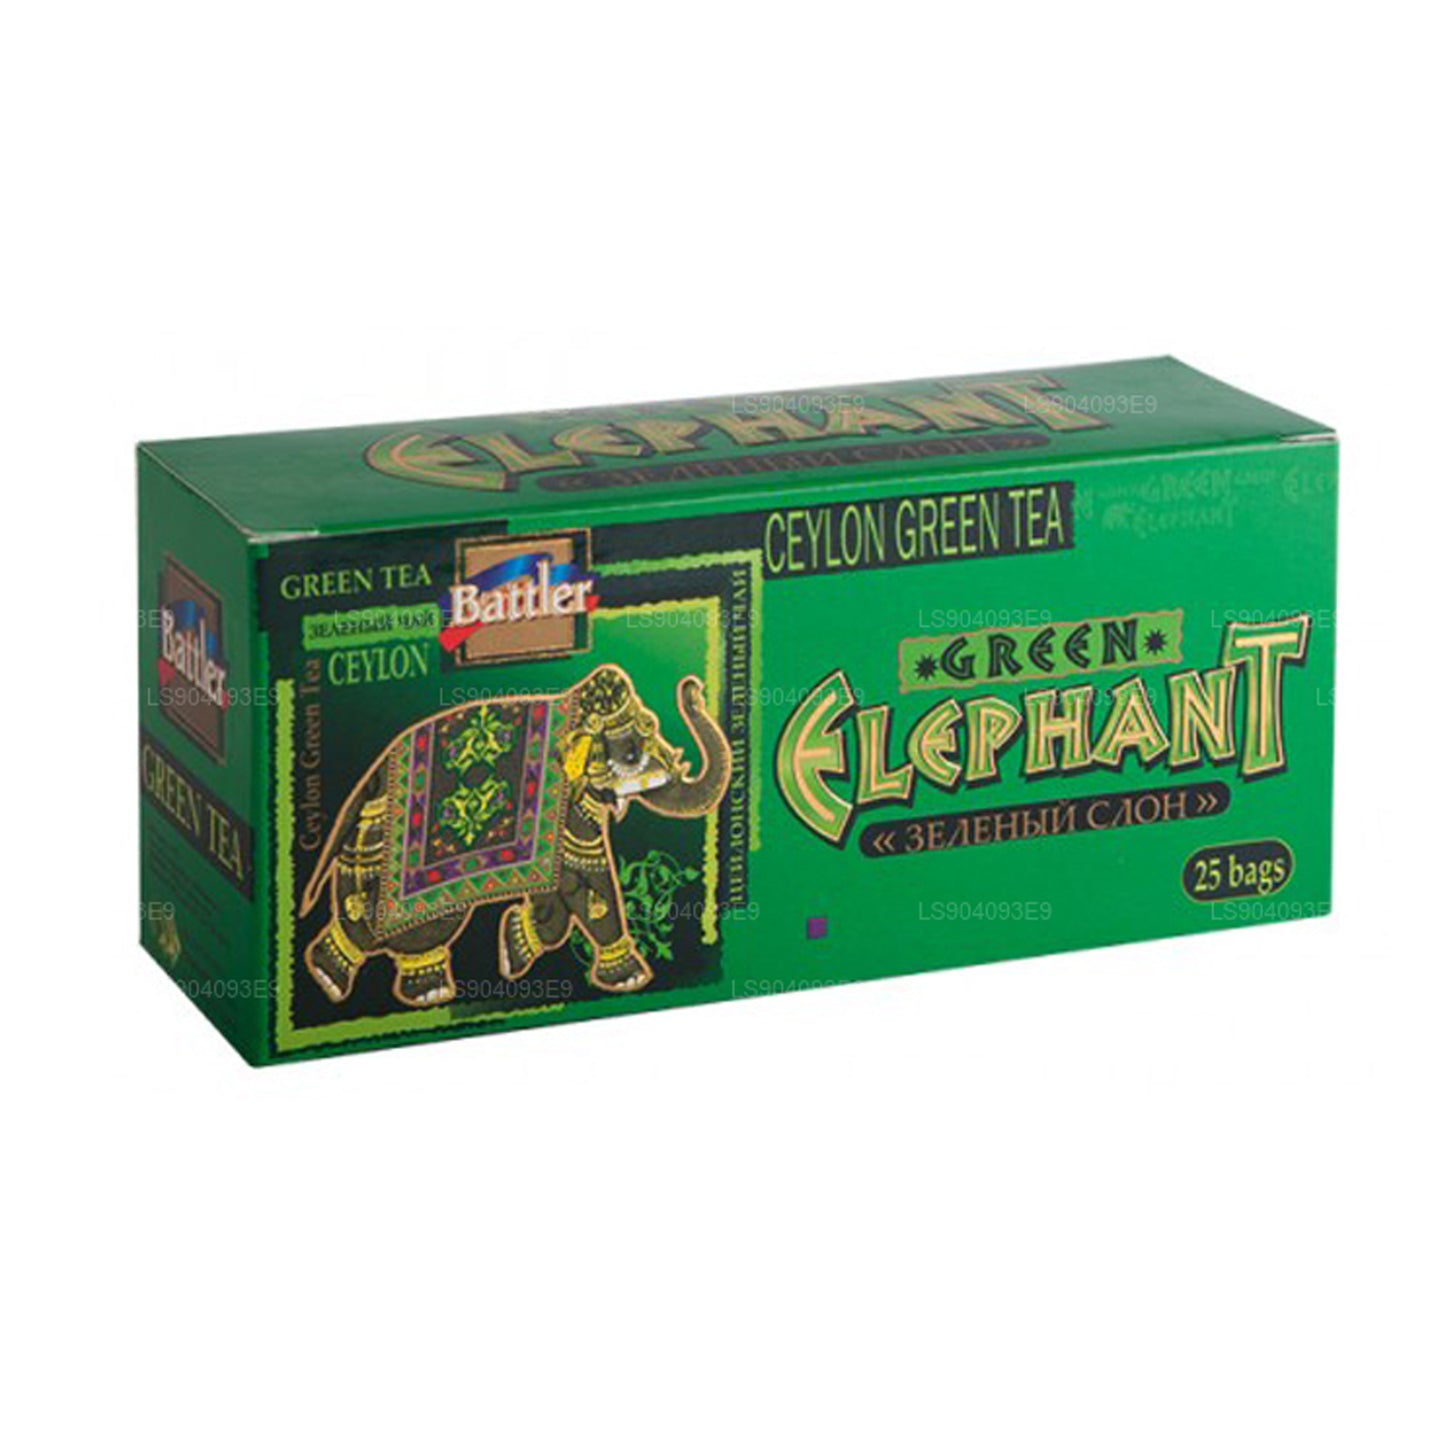 Battler Green Elephant (50g) 25 Tea Bags